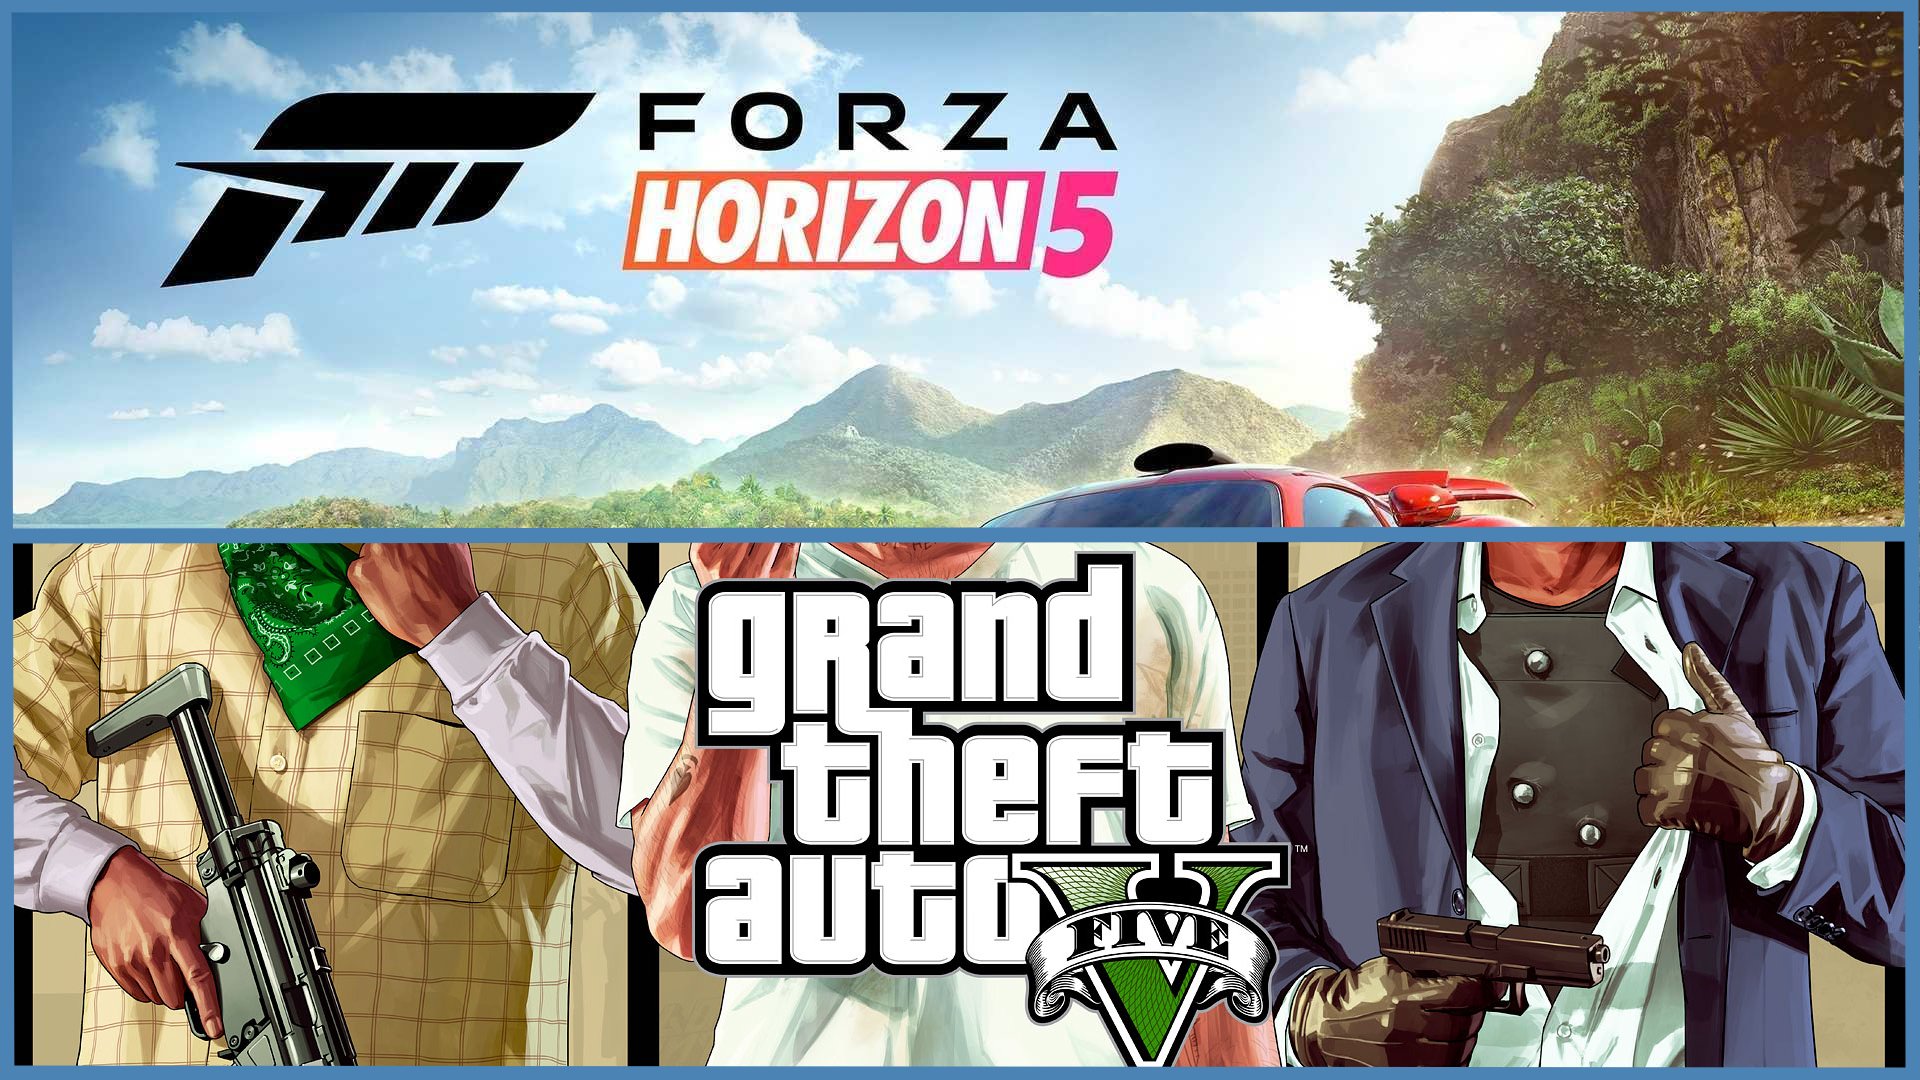 Forza Horizon 5 Online + Gta 5 + Garanti